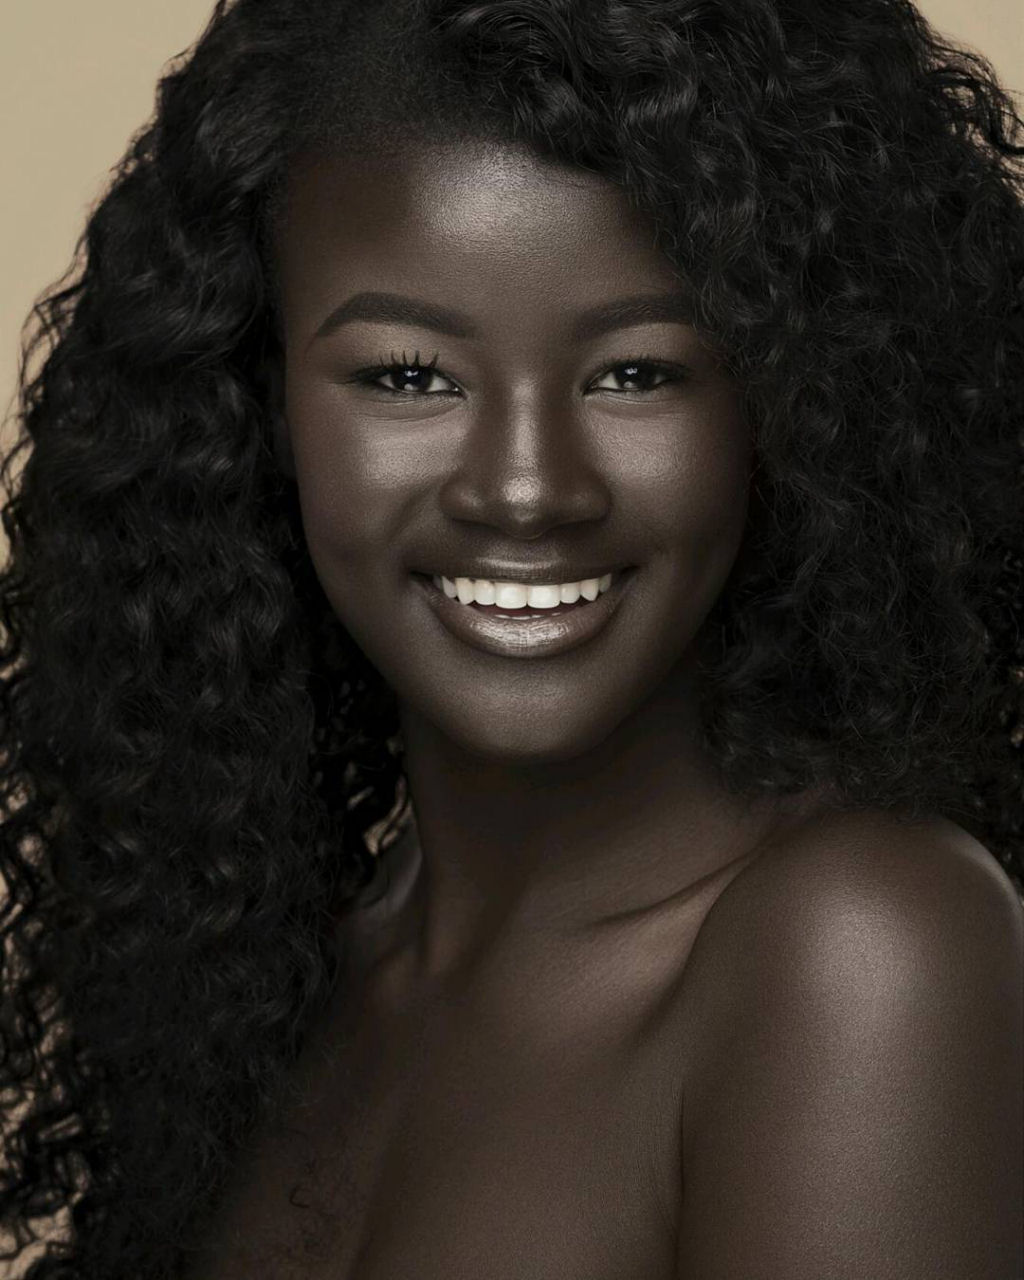 Khoudia Diop, a &#8220;Deusa da Melanina&#8221; está a conquistar o Instagram com o seu incrível tom de pele